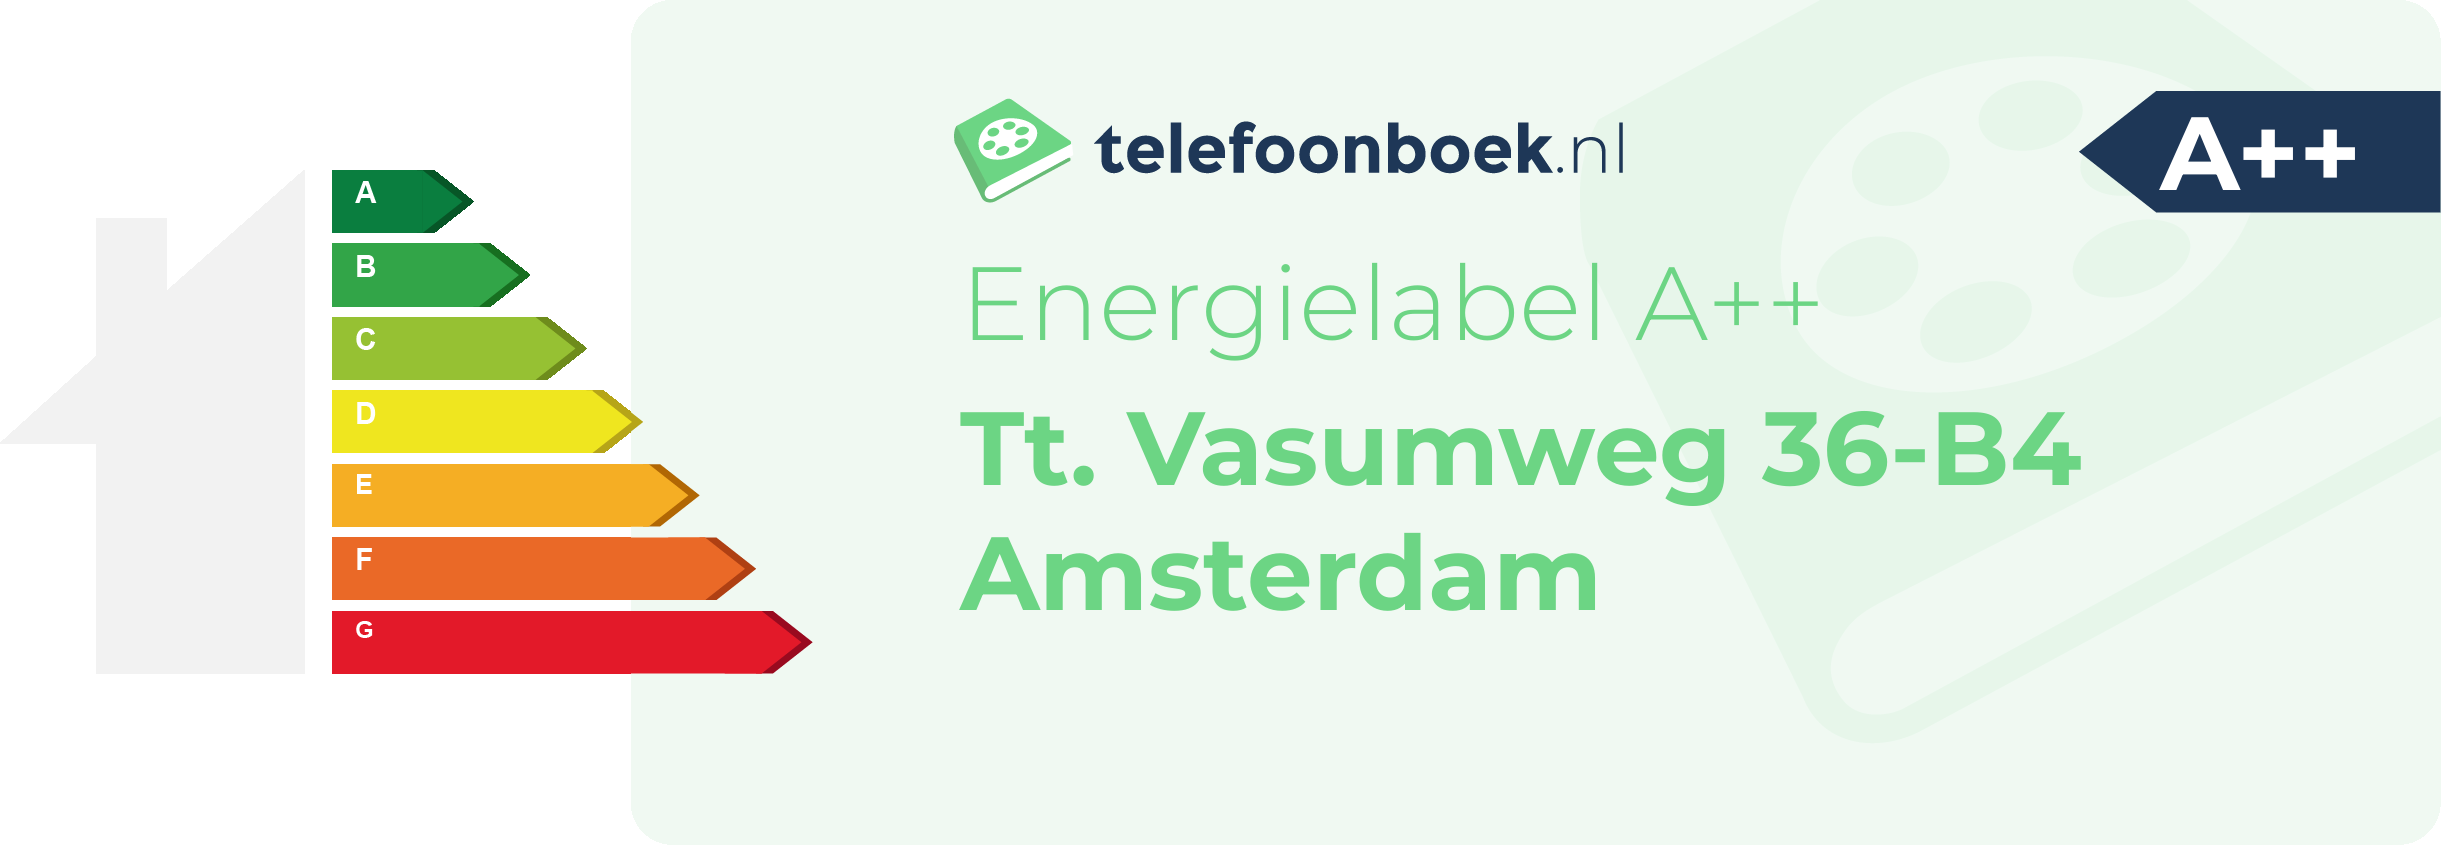 Energielabel Tt. Vasumweg 36-B4 Amsterdam